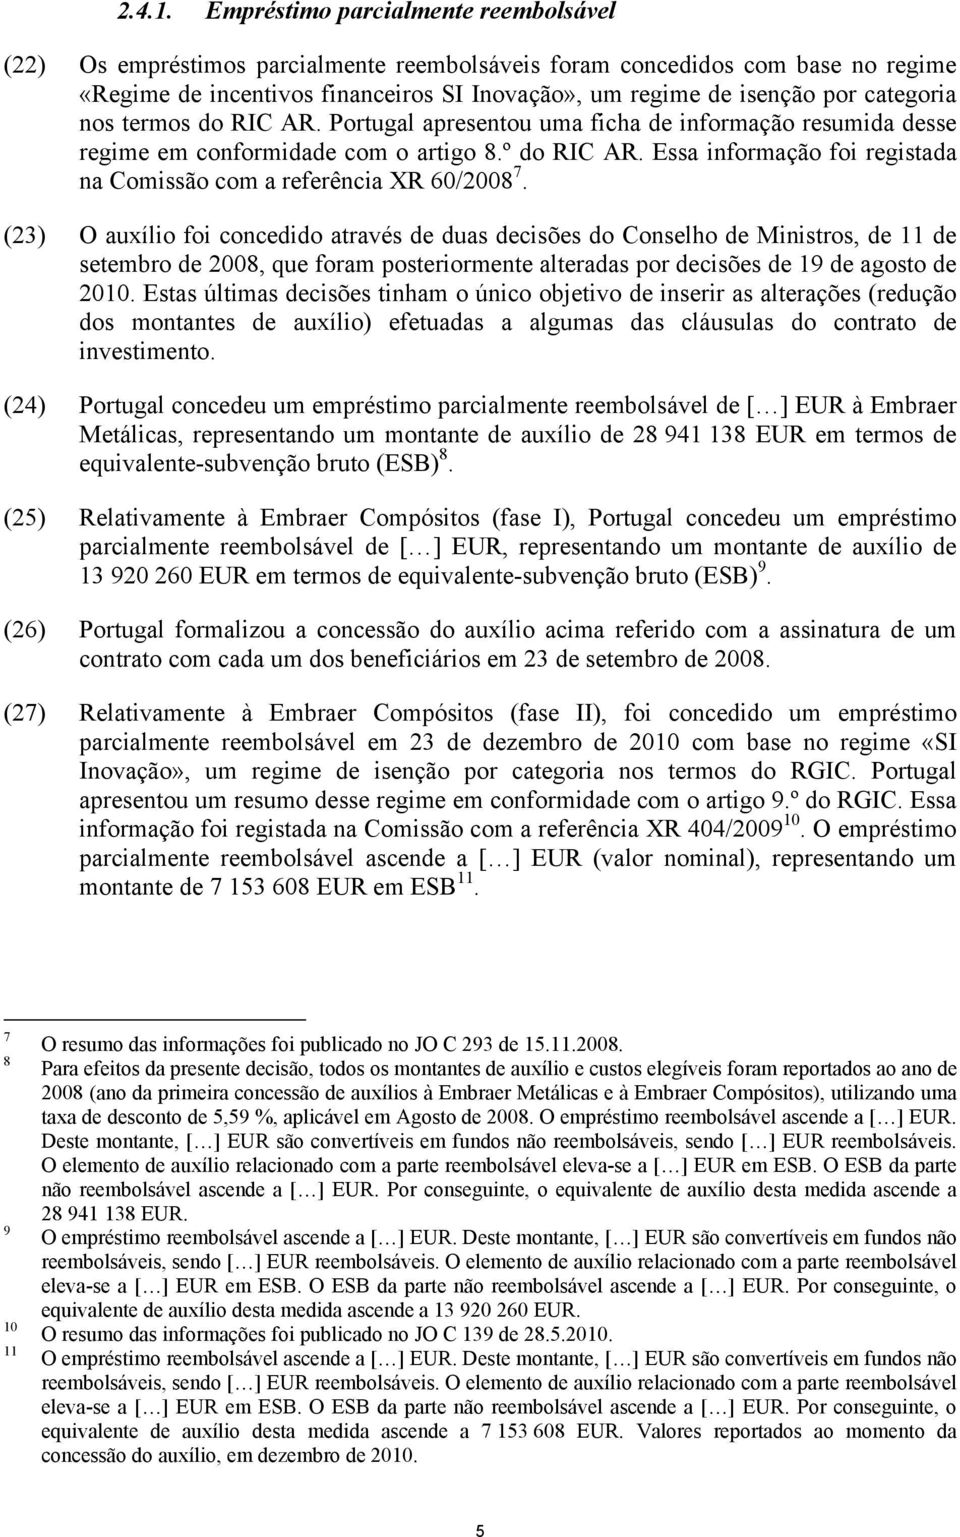 categoria nos termos do RIC AR. Portugal apresentou uma ficha de informação resumida desse regime em conformidade com o artigo 8.º do RIC AR.